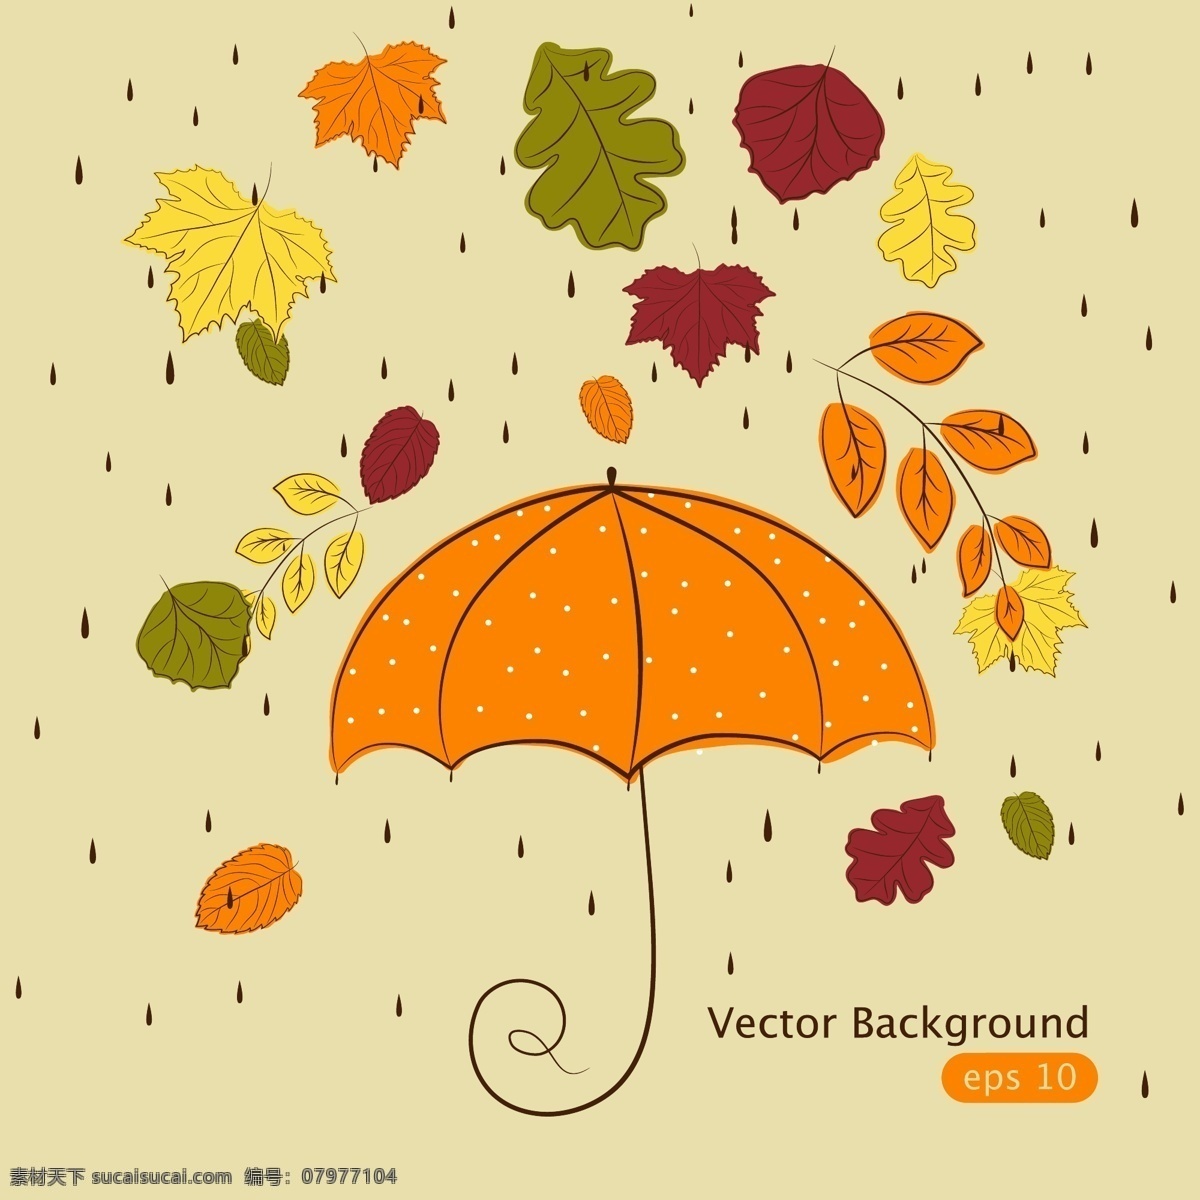 童趣 卡通 绘画 矢量 装饰 图案 枫叶 雨伞 树叶 秋天 雨点